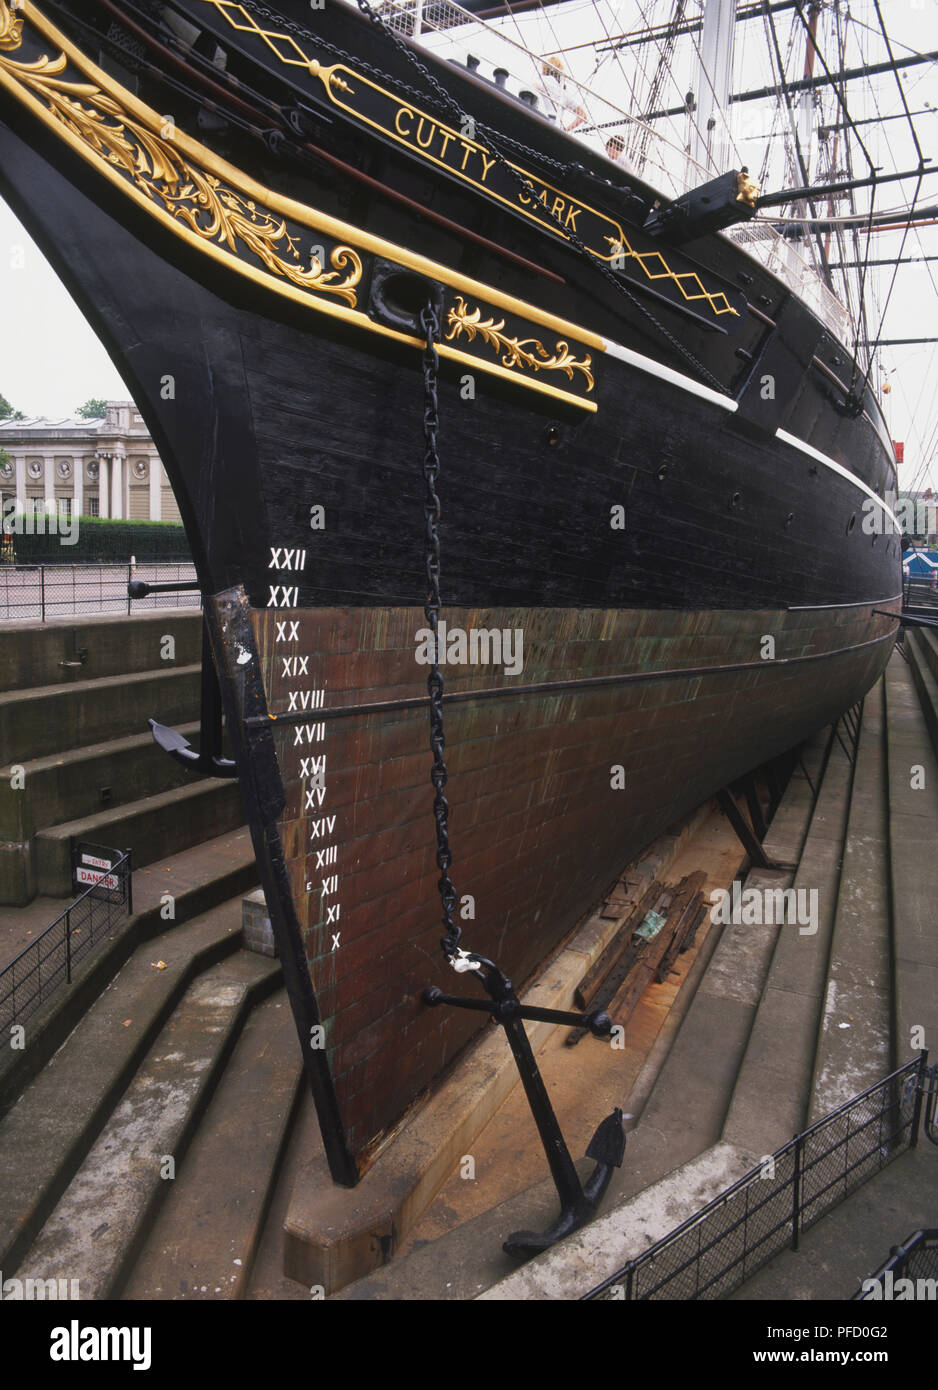 Gran Bretagna, Inghilterra, Londra, il Cutty Sark, prua di nave sul bacino di carenaggio. Foto Stock